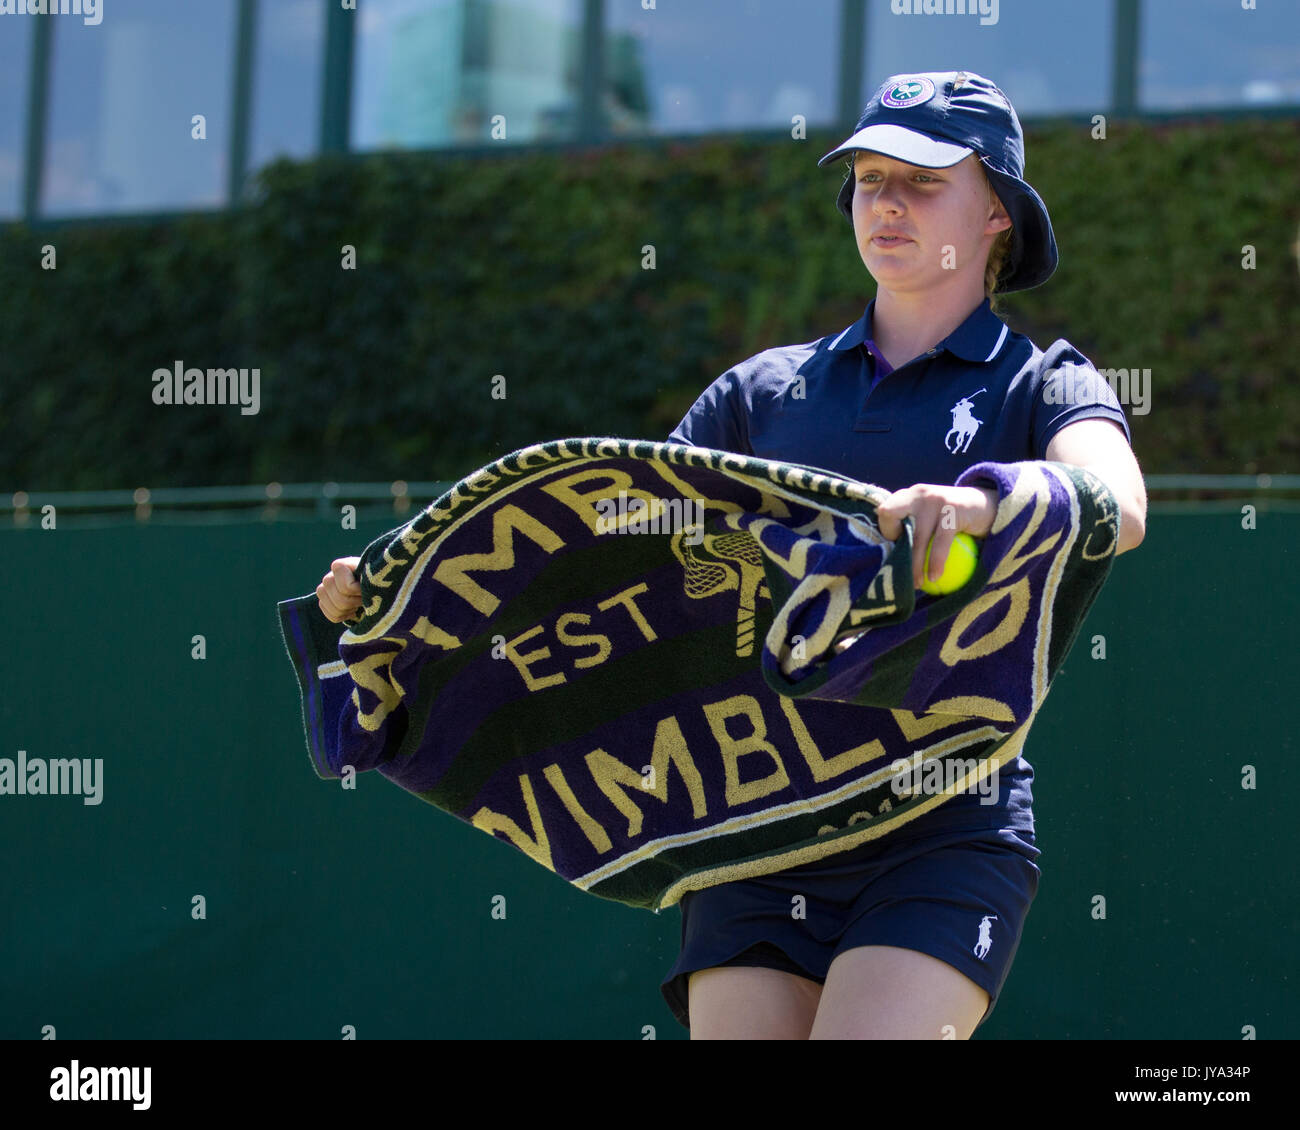 Wimbledon towel hi-res stock photography and images - Alamy